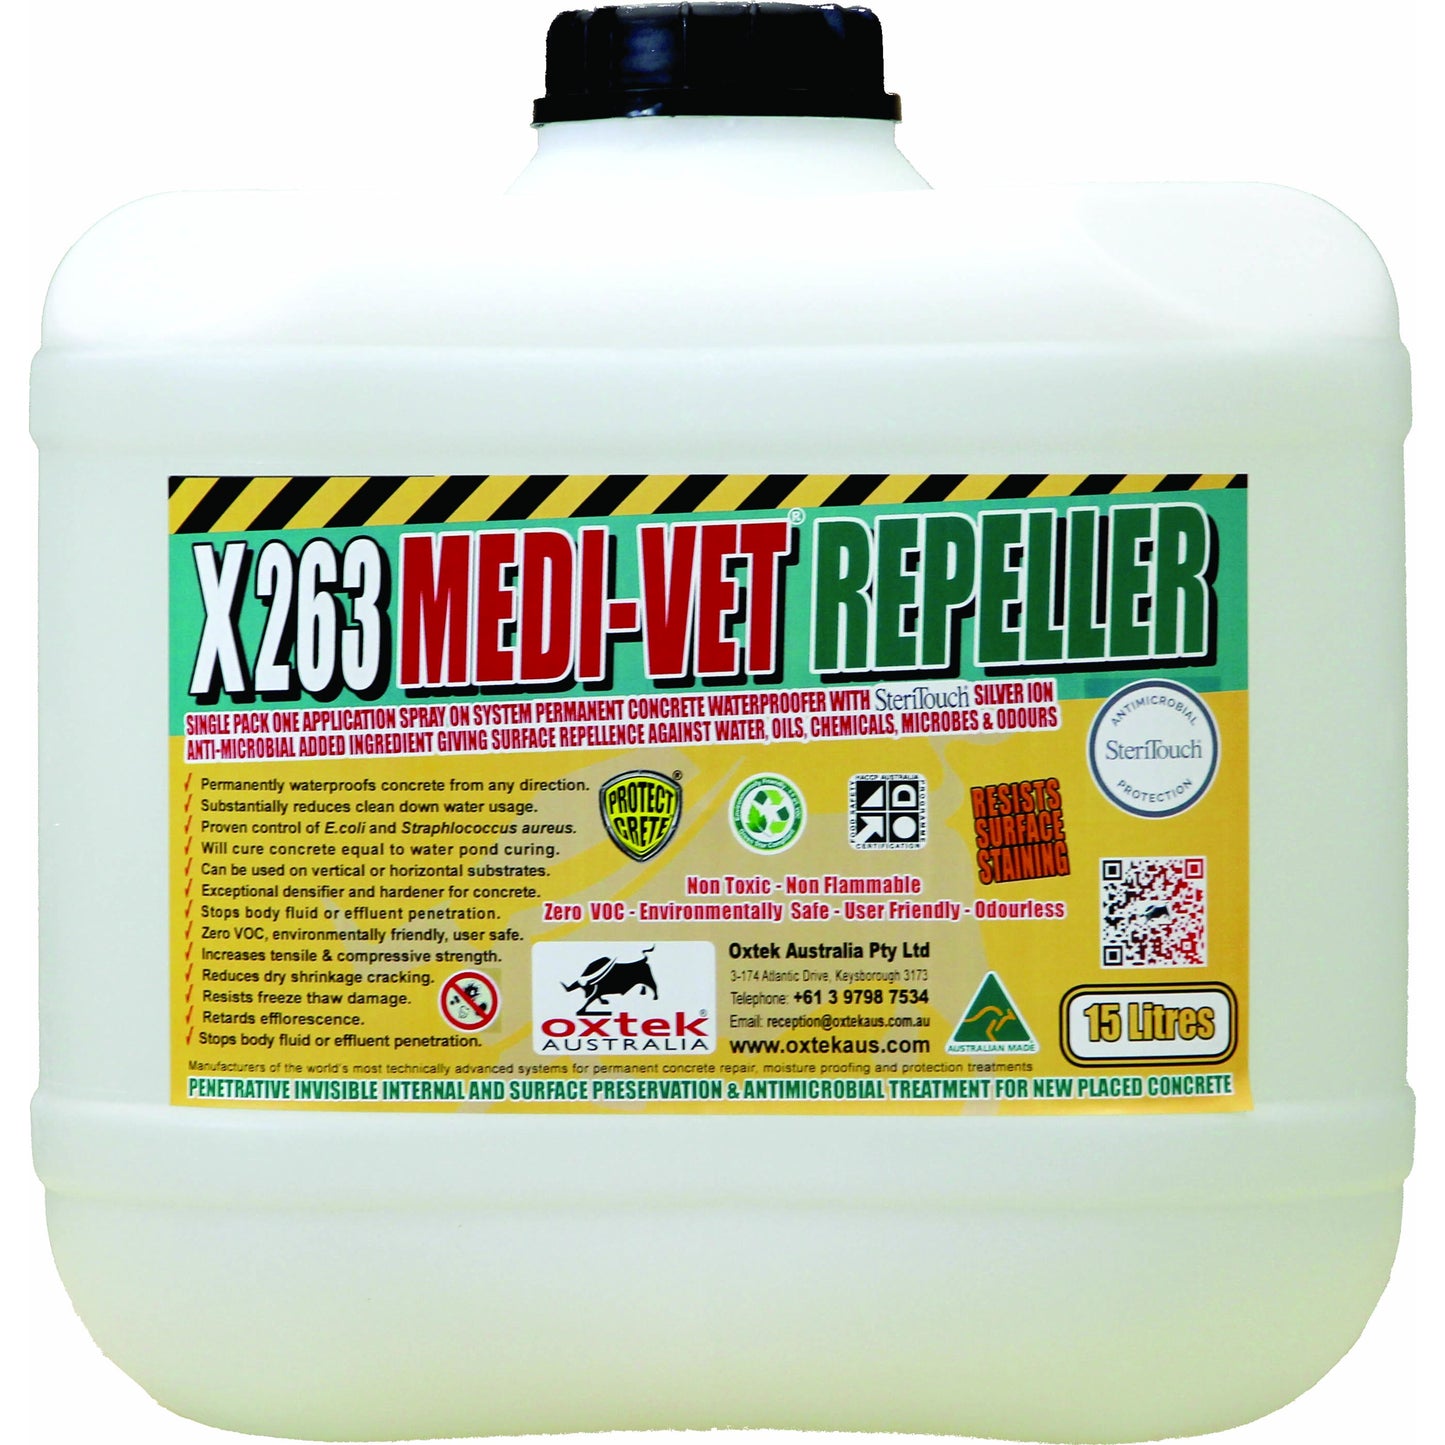 OXT X263 Medi-Vet Repeller SteriTouch